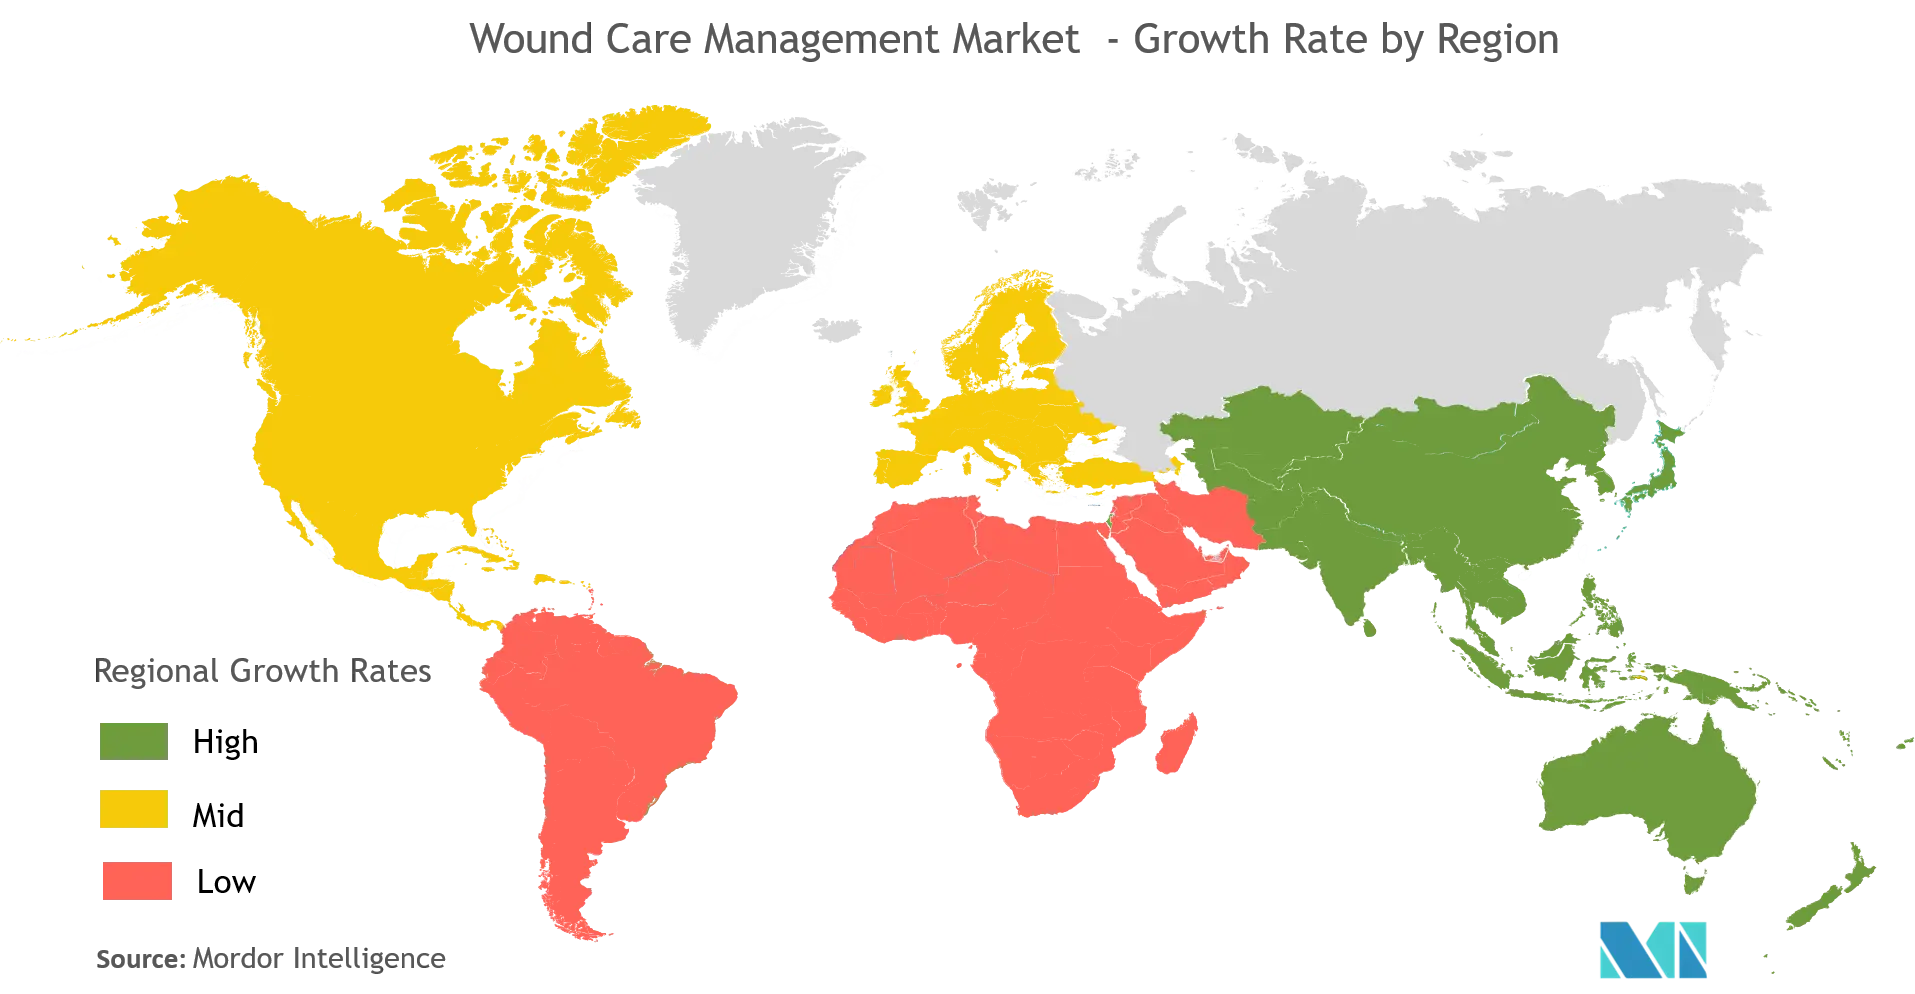 Wound Care Management Market-geo